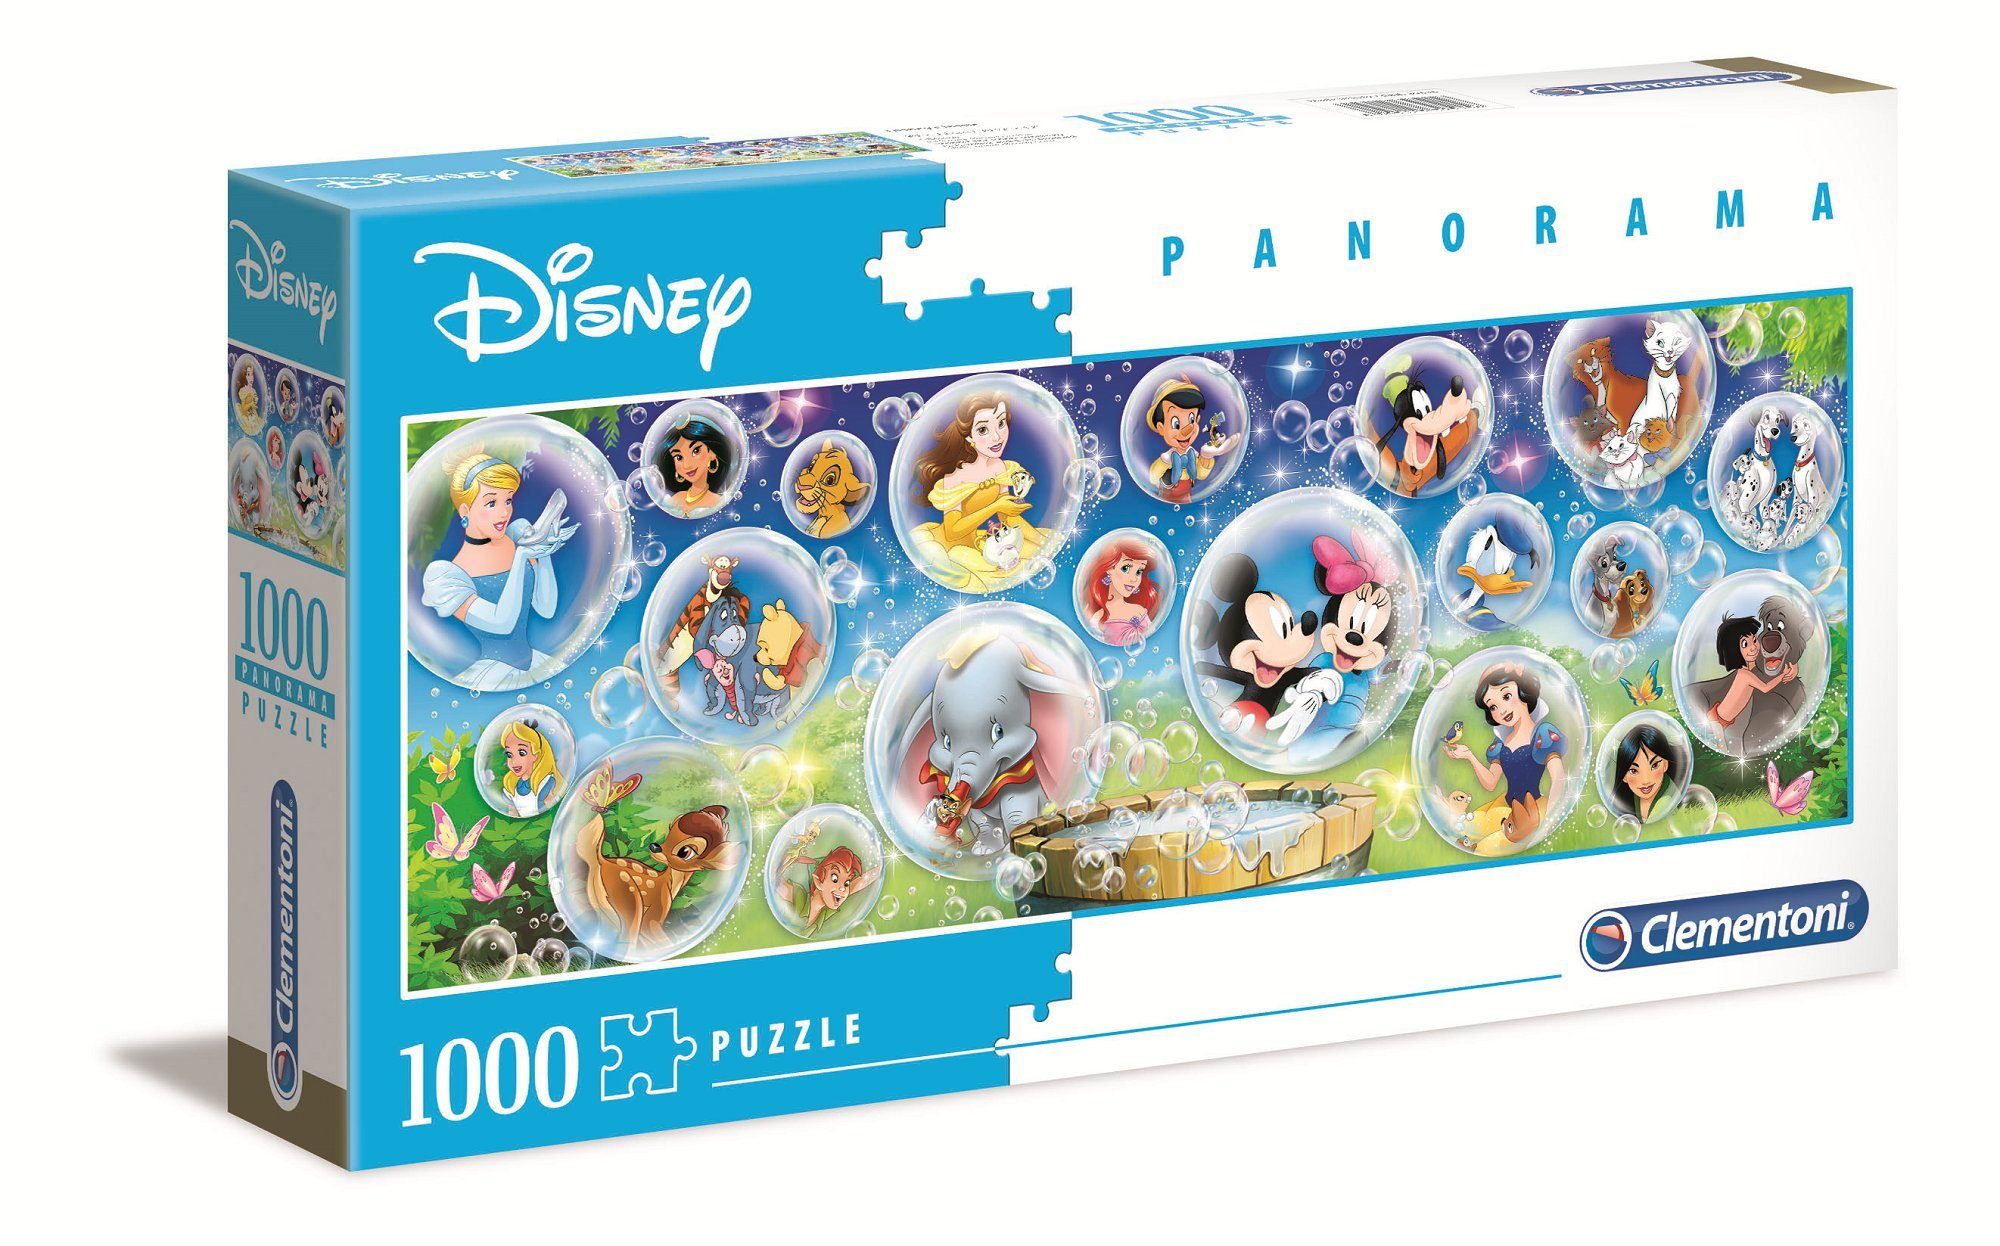 Clementoni® Puzzle 39515 Disney Classic 1000 Teile Panorama Puzzle, 1000 Puzzleteile